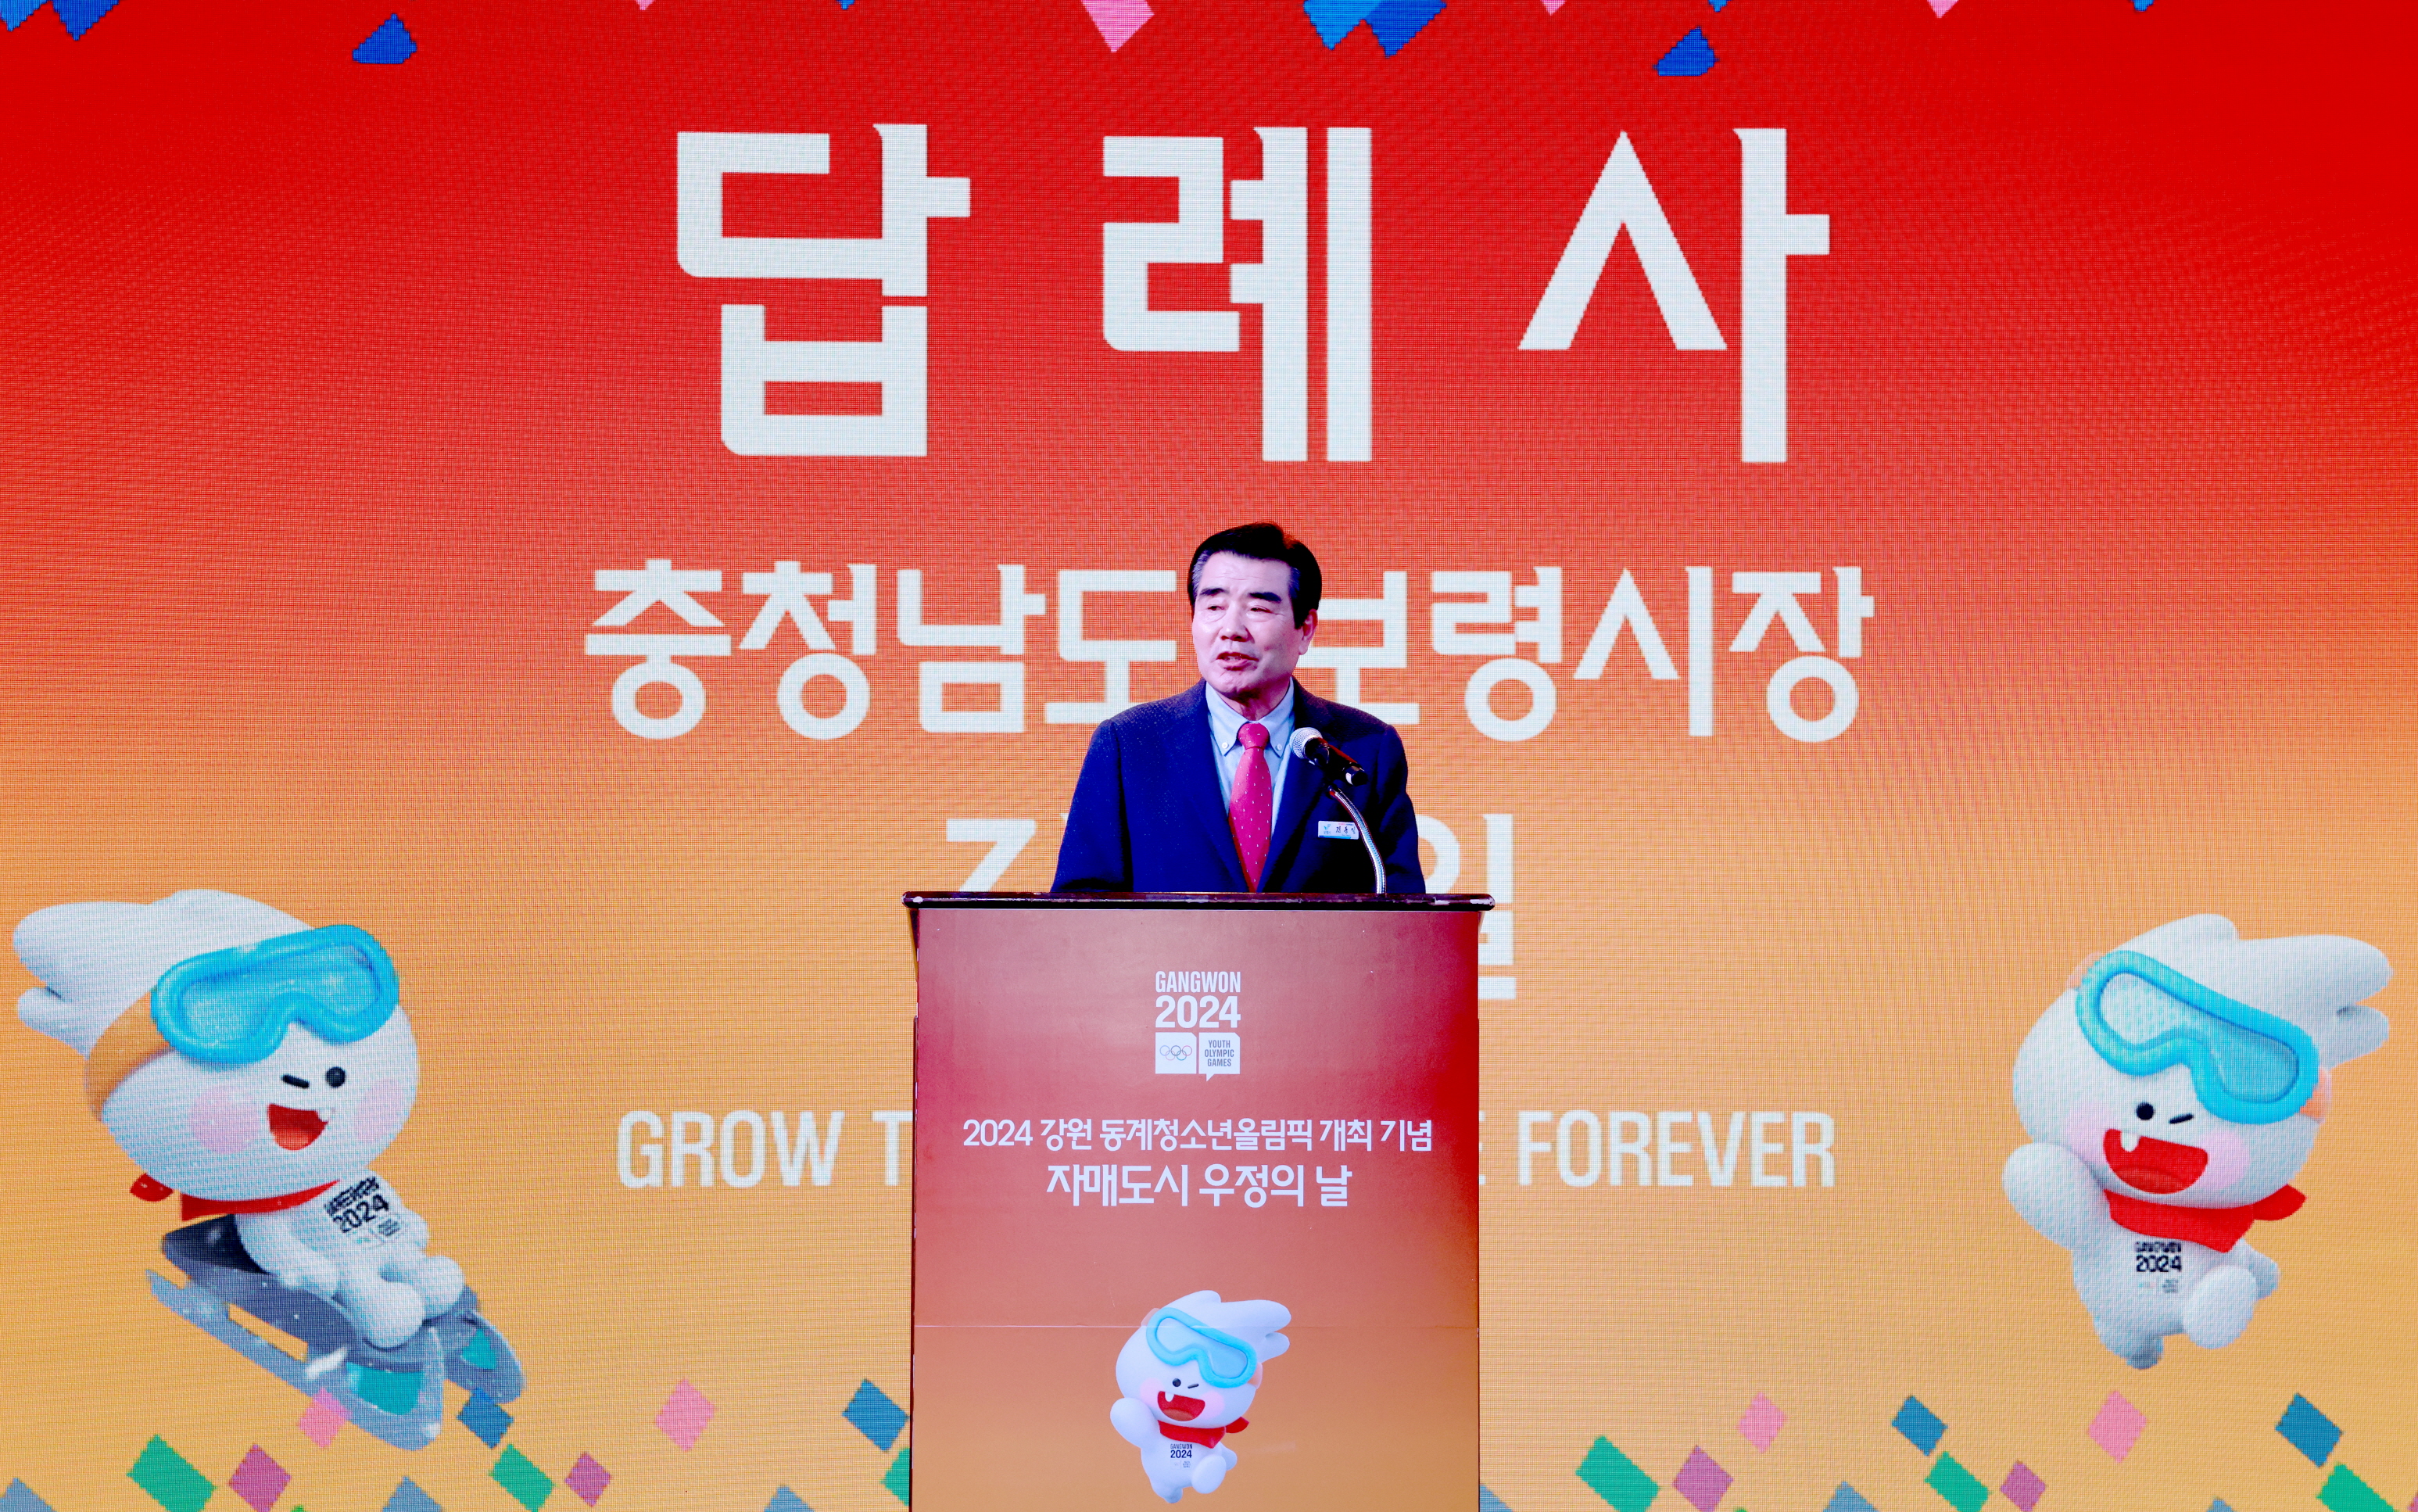 2024 강원동계청소년올림픽 개최 자매도시 우정의 날